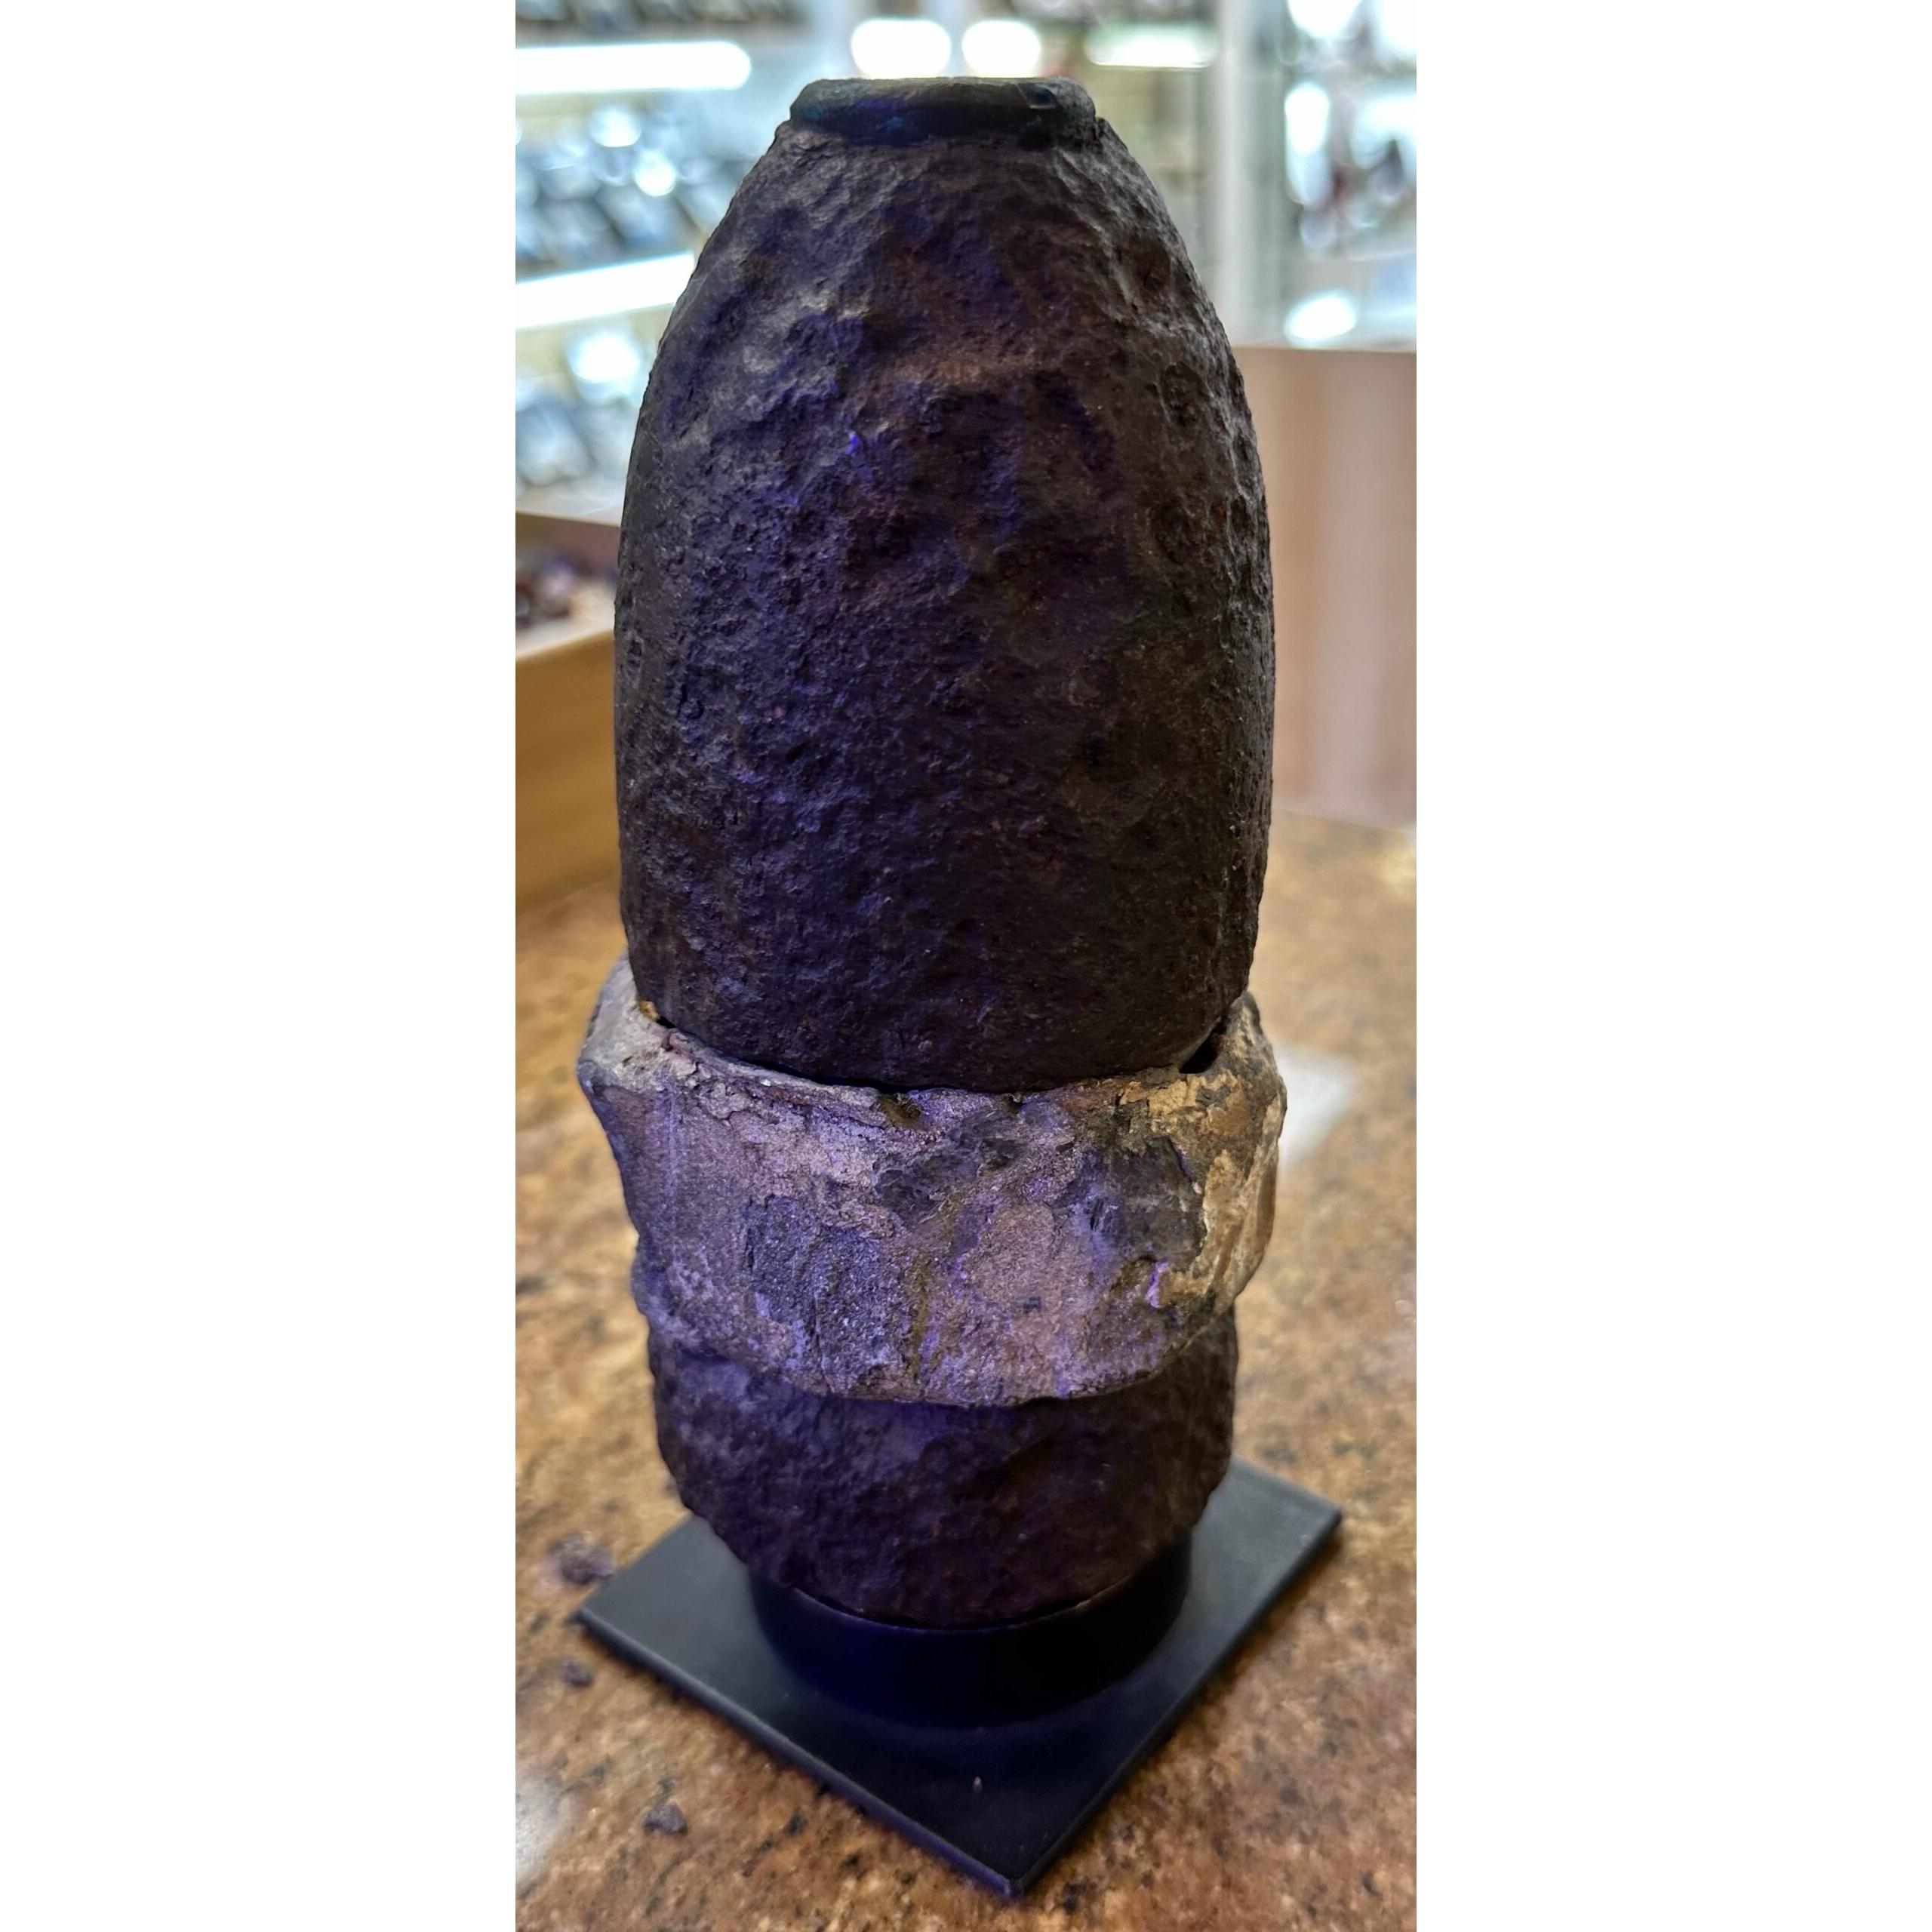 Hotchkiss Artillery Shell, Civil War Artifact Prehistoric Online